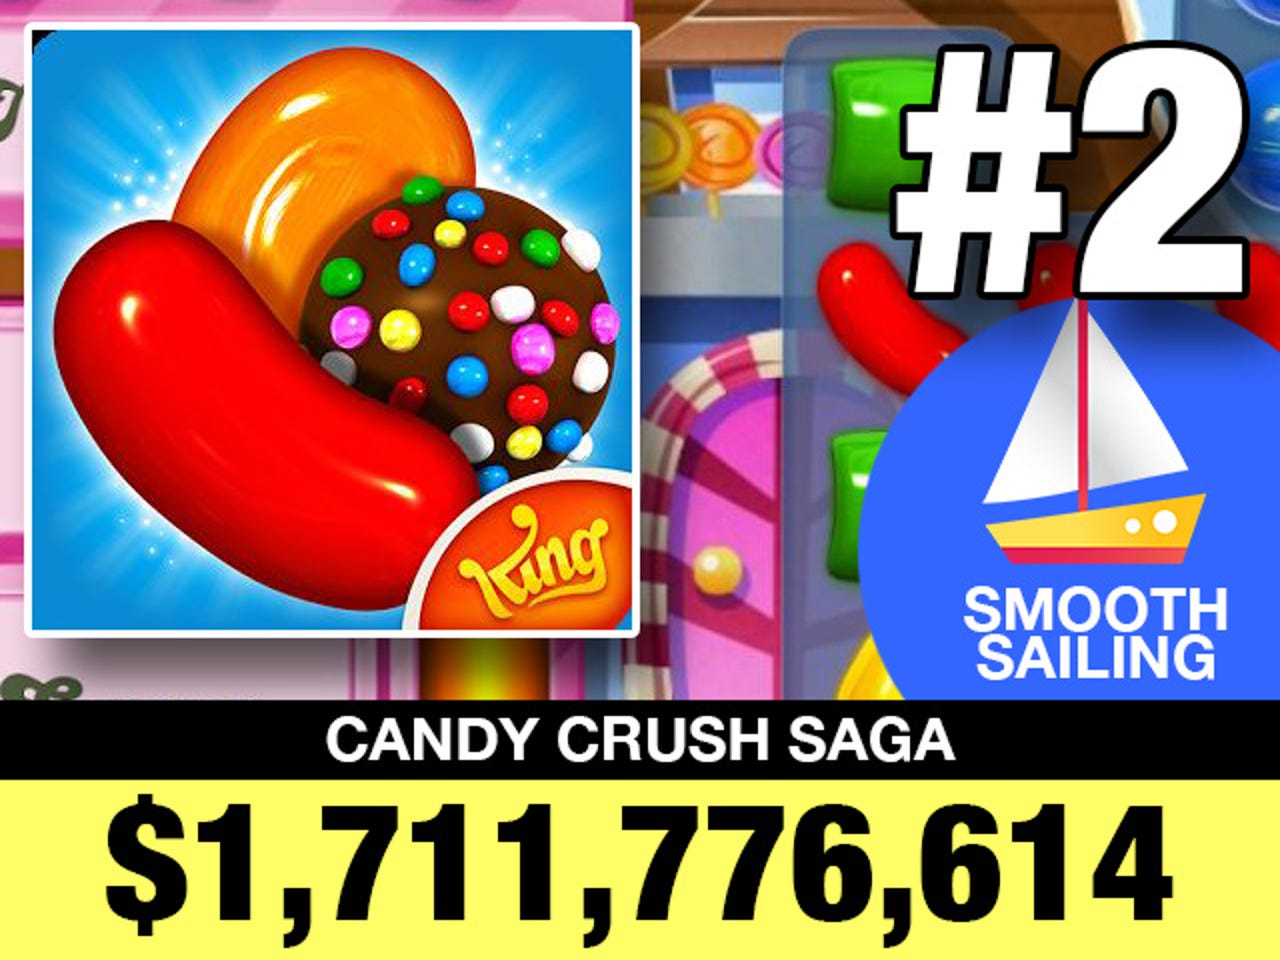 02-candy-crush-saga.jpg